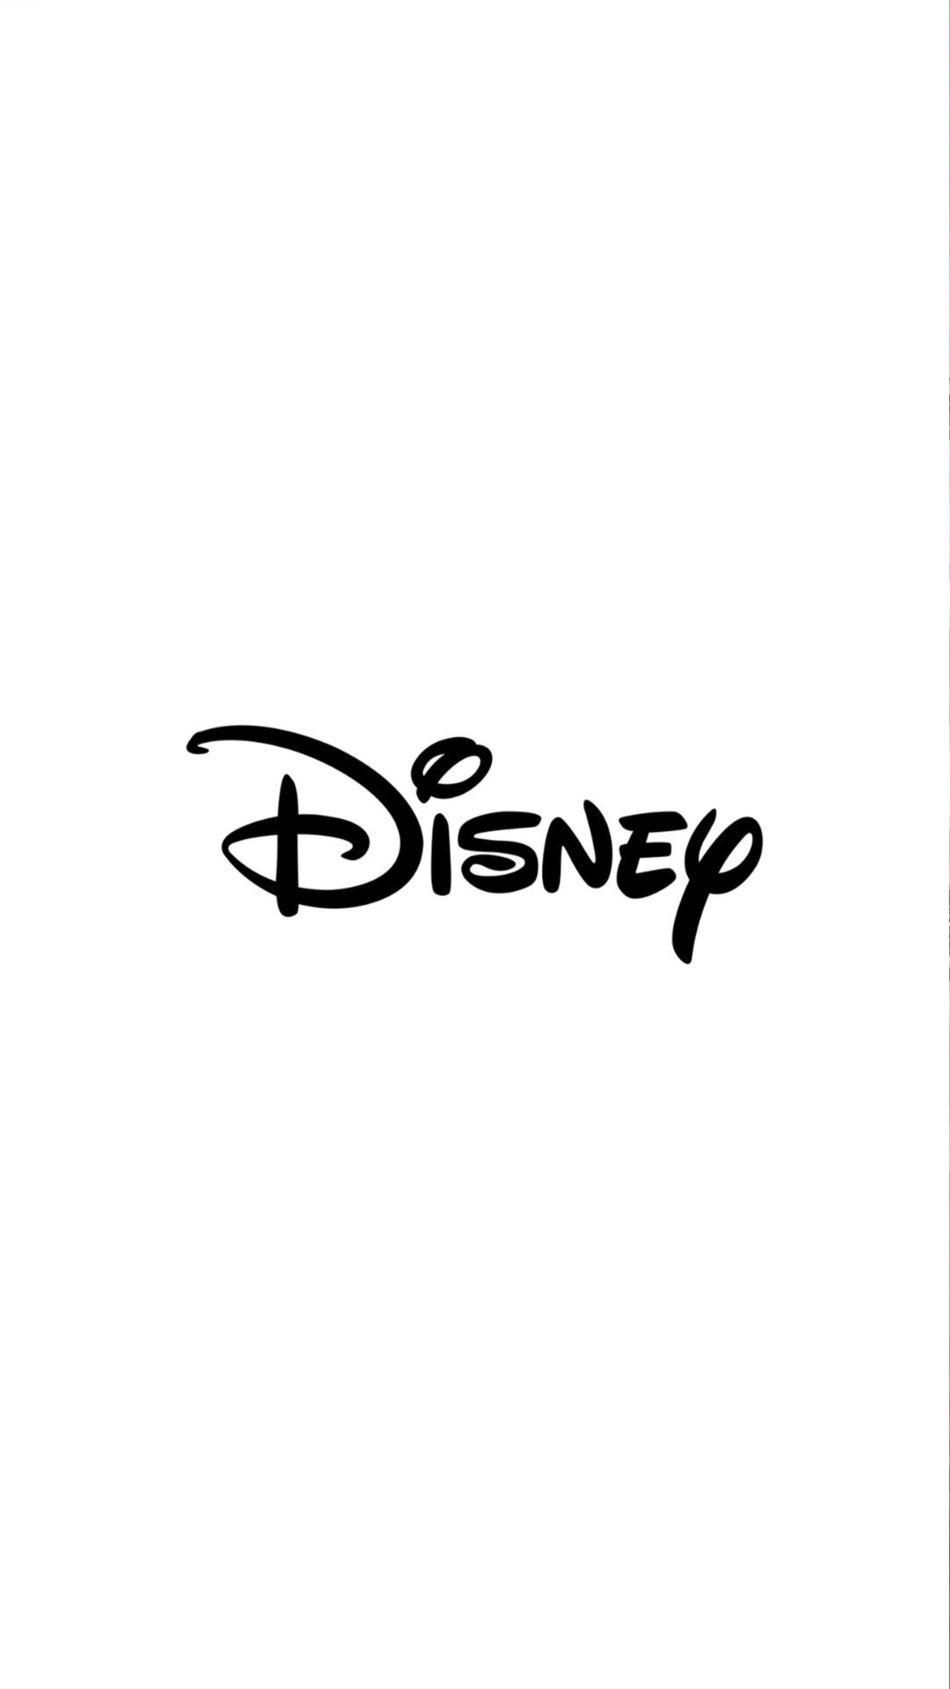 Nhãn hiệu Disney luôn đem đến những giây phút thư giãn cho bạn bằng những bộ phim hoạt hình đầy màu sắc và hài hước. Đừng bỏ lỡ cơ hội chiêm ngưỡng logo Disney độc đáo và đầy sức sống này trong hình ảnh, sẽ mang lại cho bạn nhiều trải nghiệm thú vị.